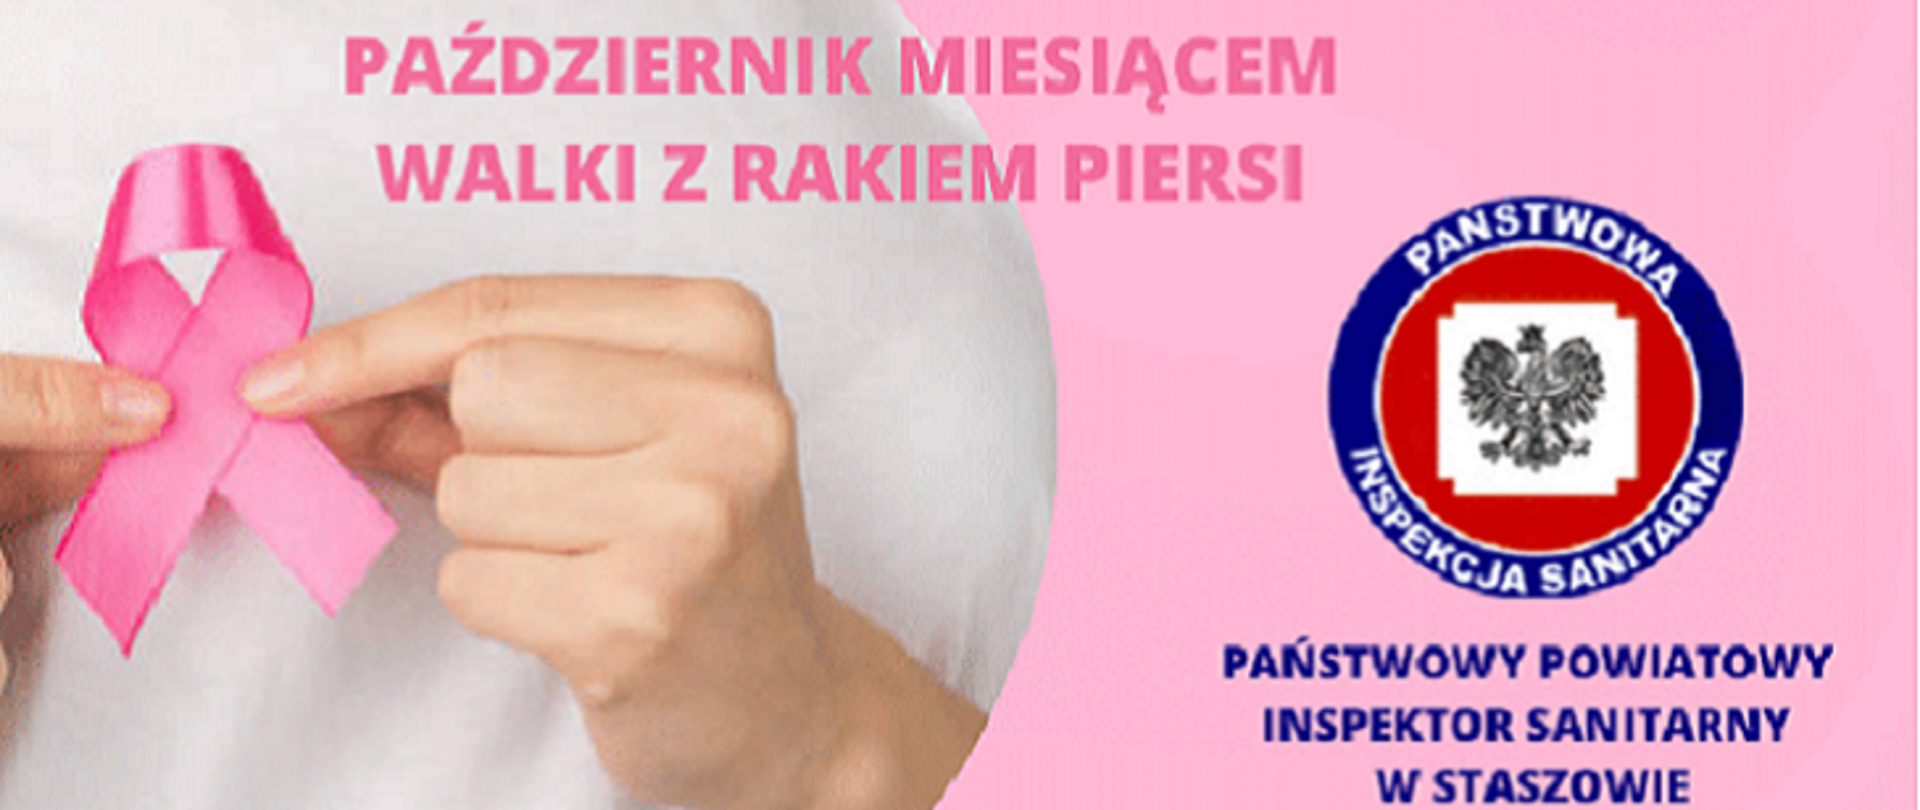 Zdjęcie przedstawia kobietę trzymającą różową wstążkę - symbol kampanii, po prawej stronie widnieje logo Państwowej Inspekcji Sanitarnej